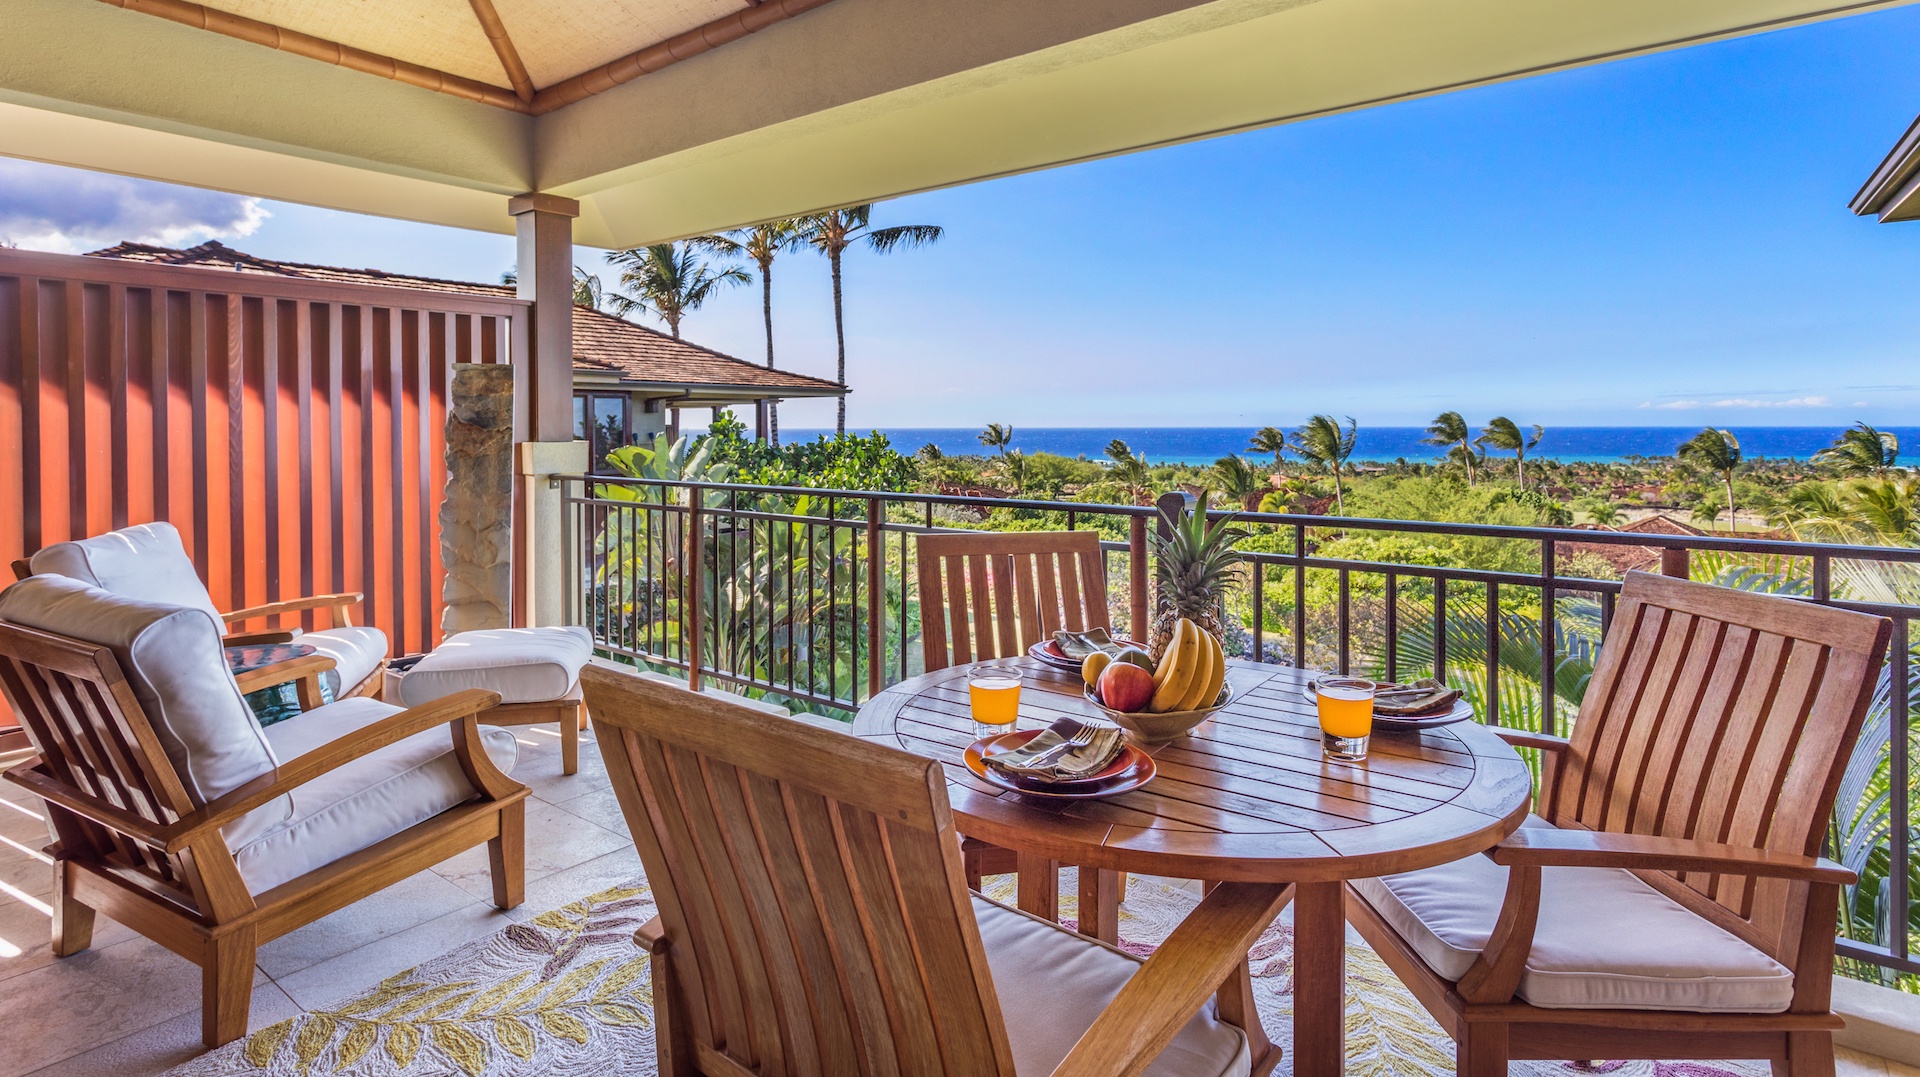 Kailua Kona Vacation Rentals, 2BD Hainoa Villa (2907B) at Four Seasons Resort at Hualalai - Reverse View of Lanai w/Privacy Wall.